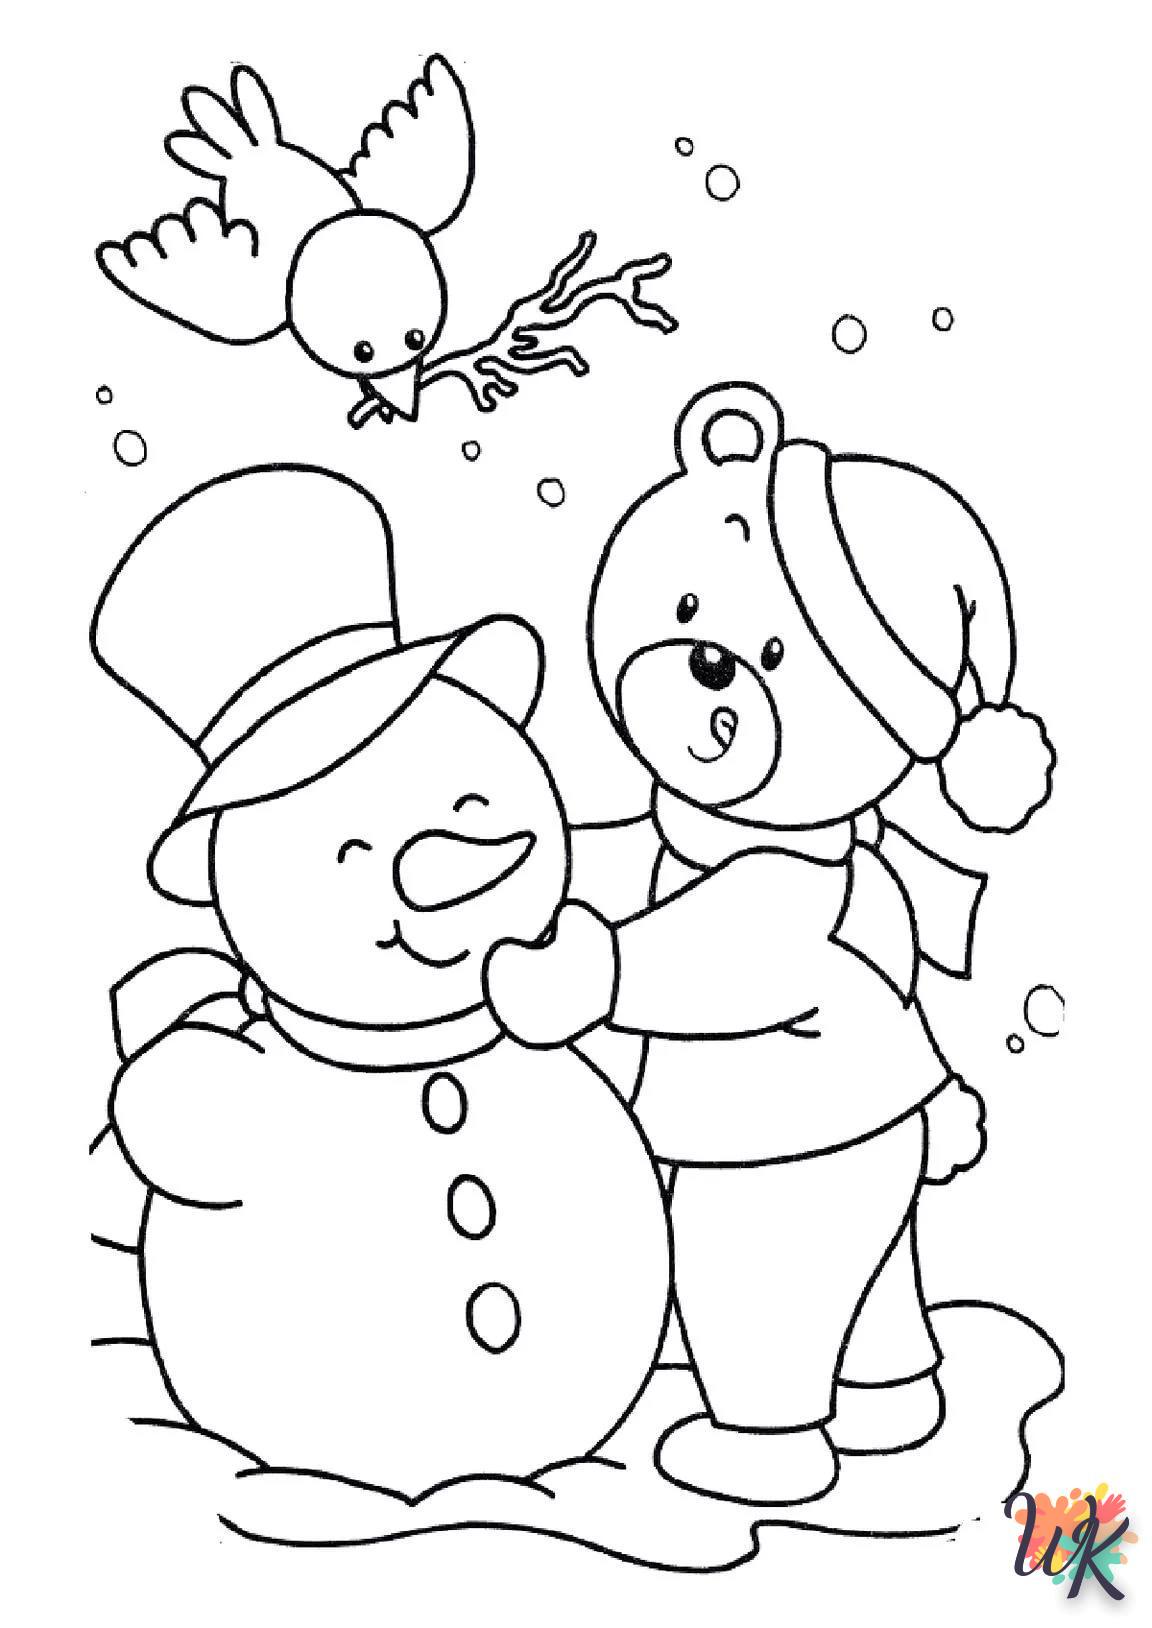 Dibujos para Colorear Muneco de nieve 87